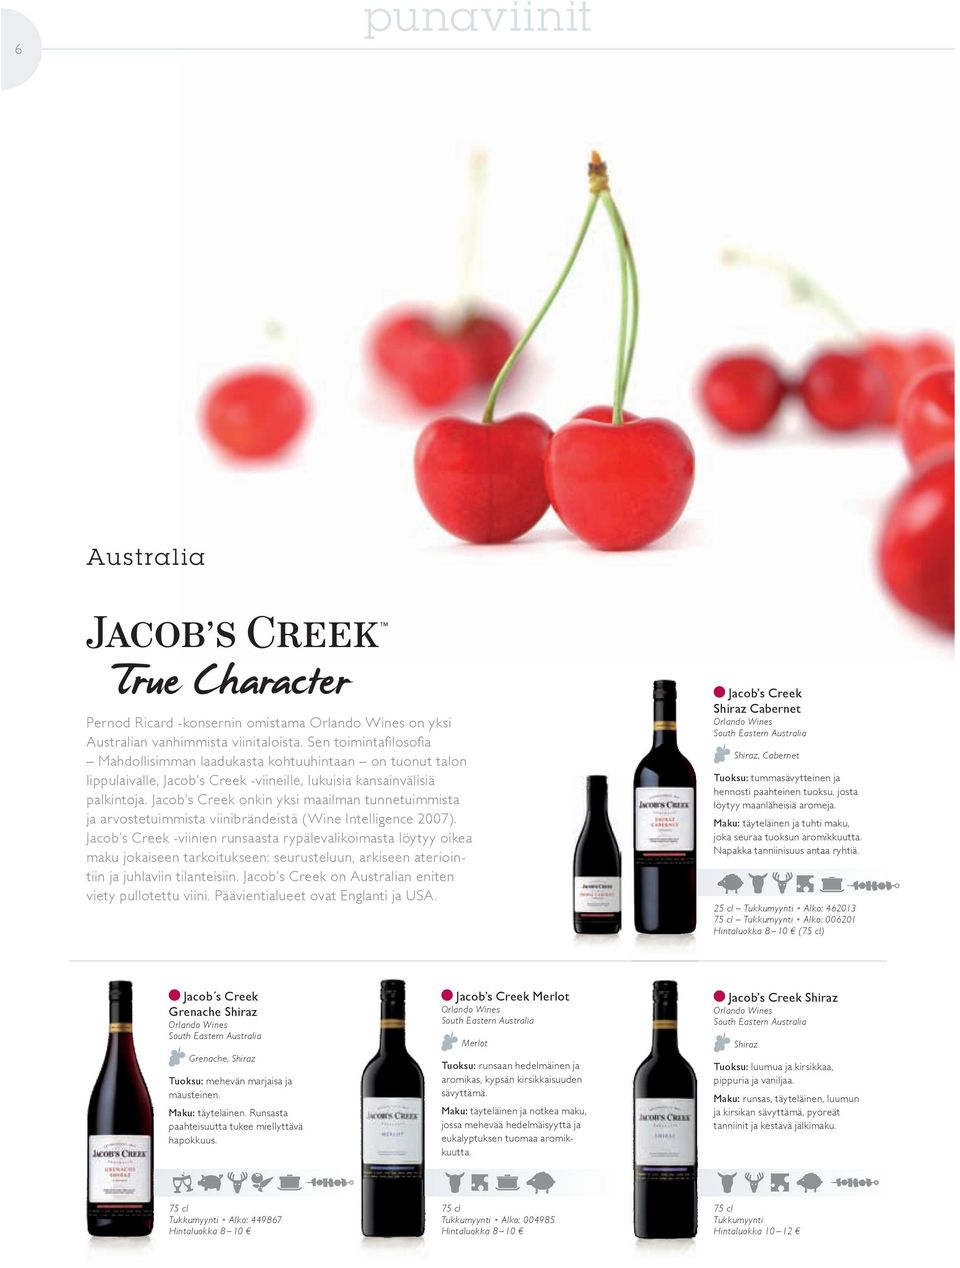 Jacob s Creek onkin yksi maailman tunnetuimmista ja arvostetuimmista viinibrändeistä (Wine intelligence 2007).